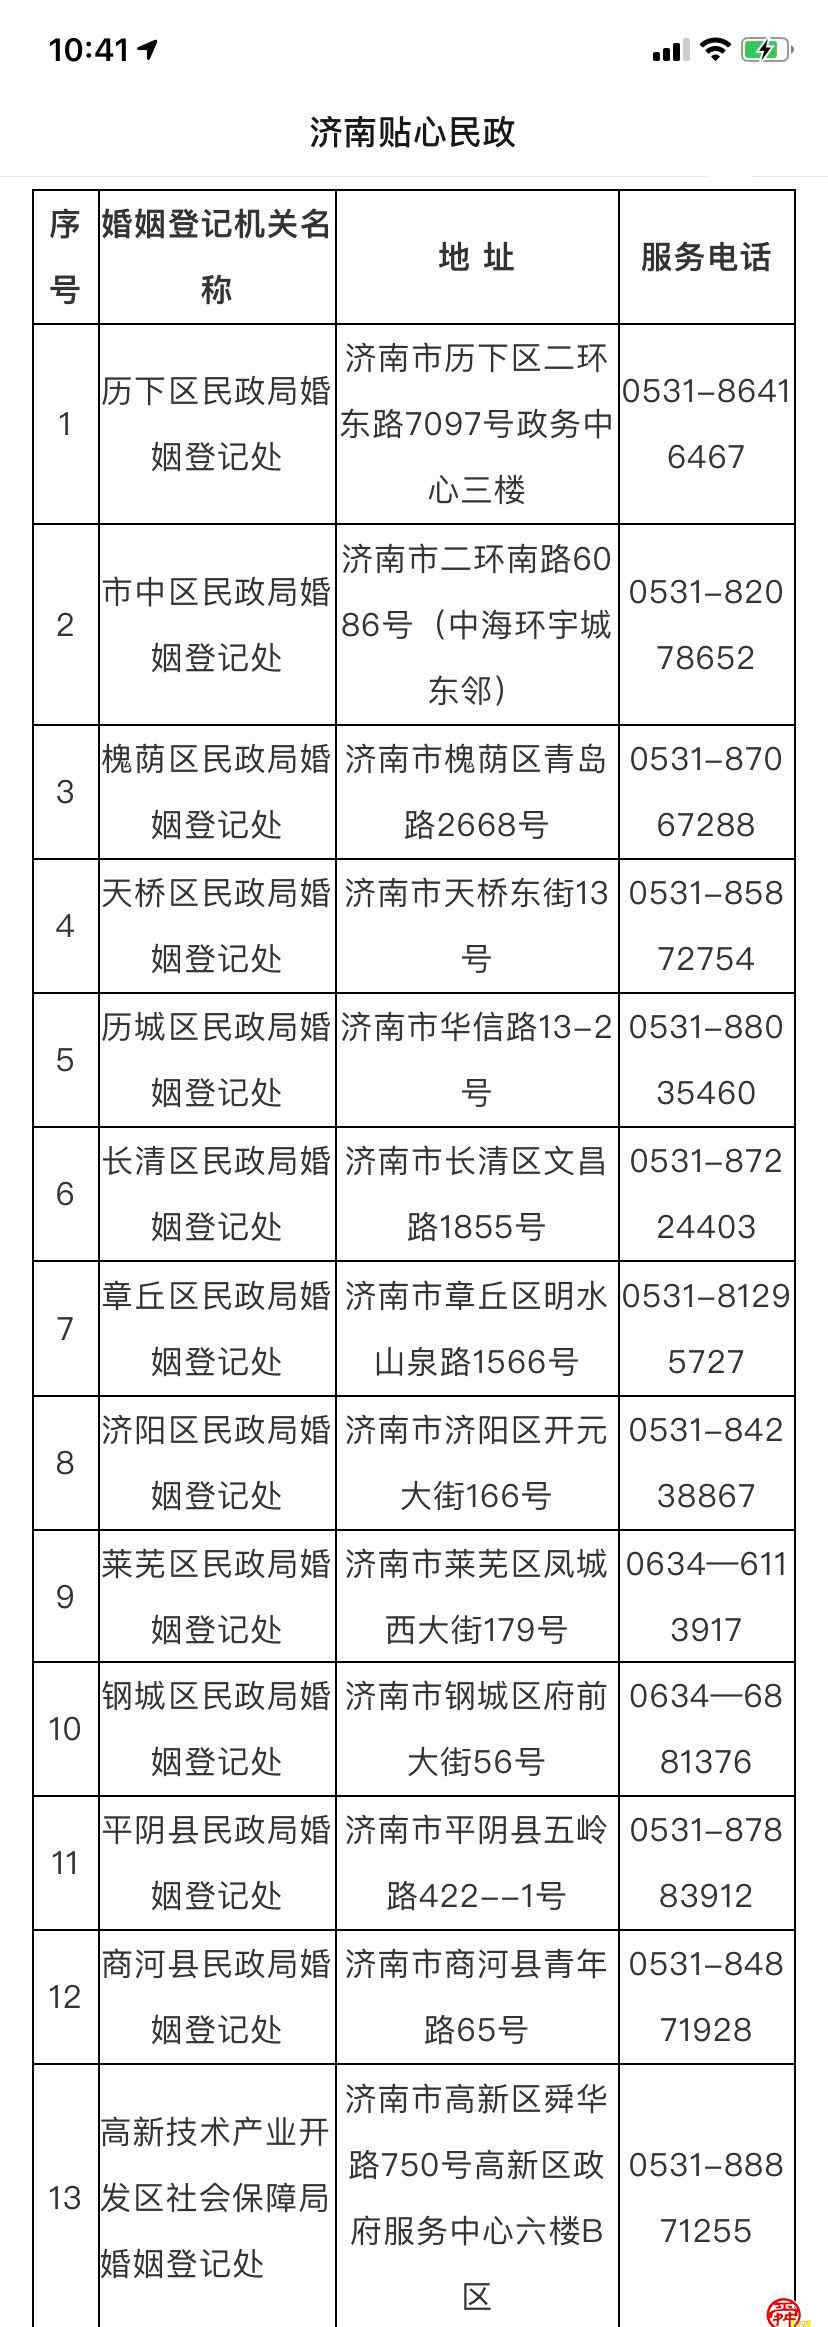 济南市民政局官网 济南市民政局将于2月2日对市民开放办理婚姻登记